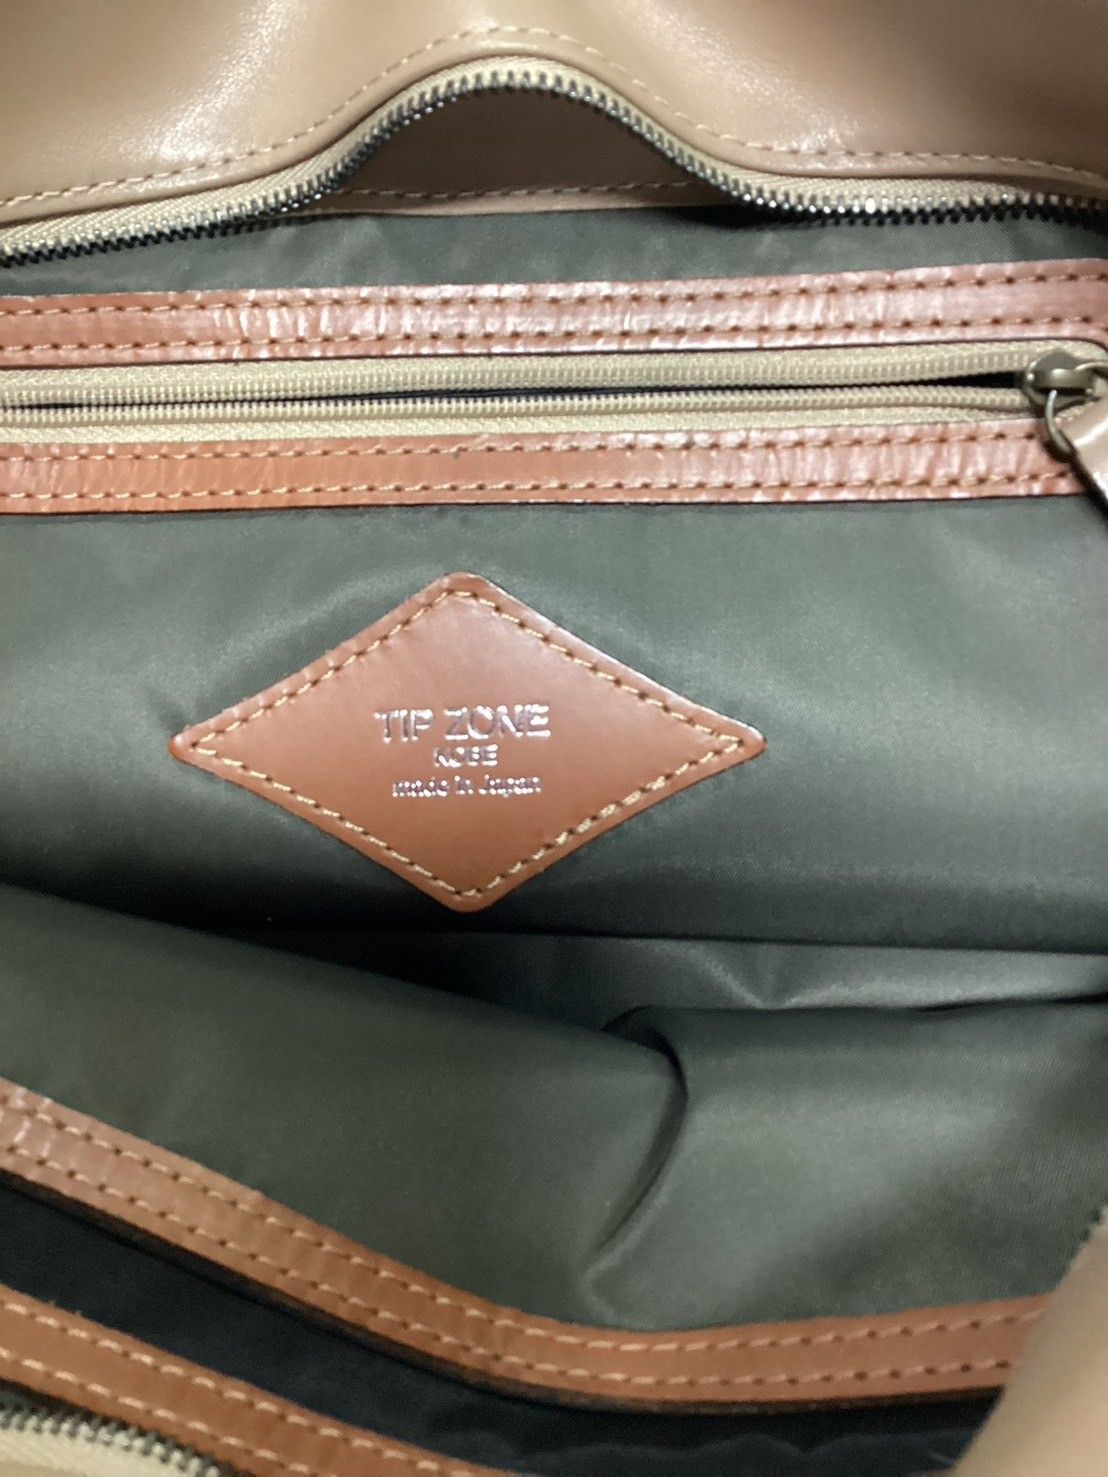 12,336円ティップゾーン 神戸 ハンドバッグ レザー バイカラー 日本製 保存袋 ブラウン